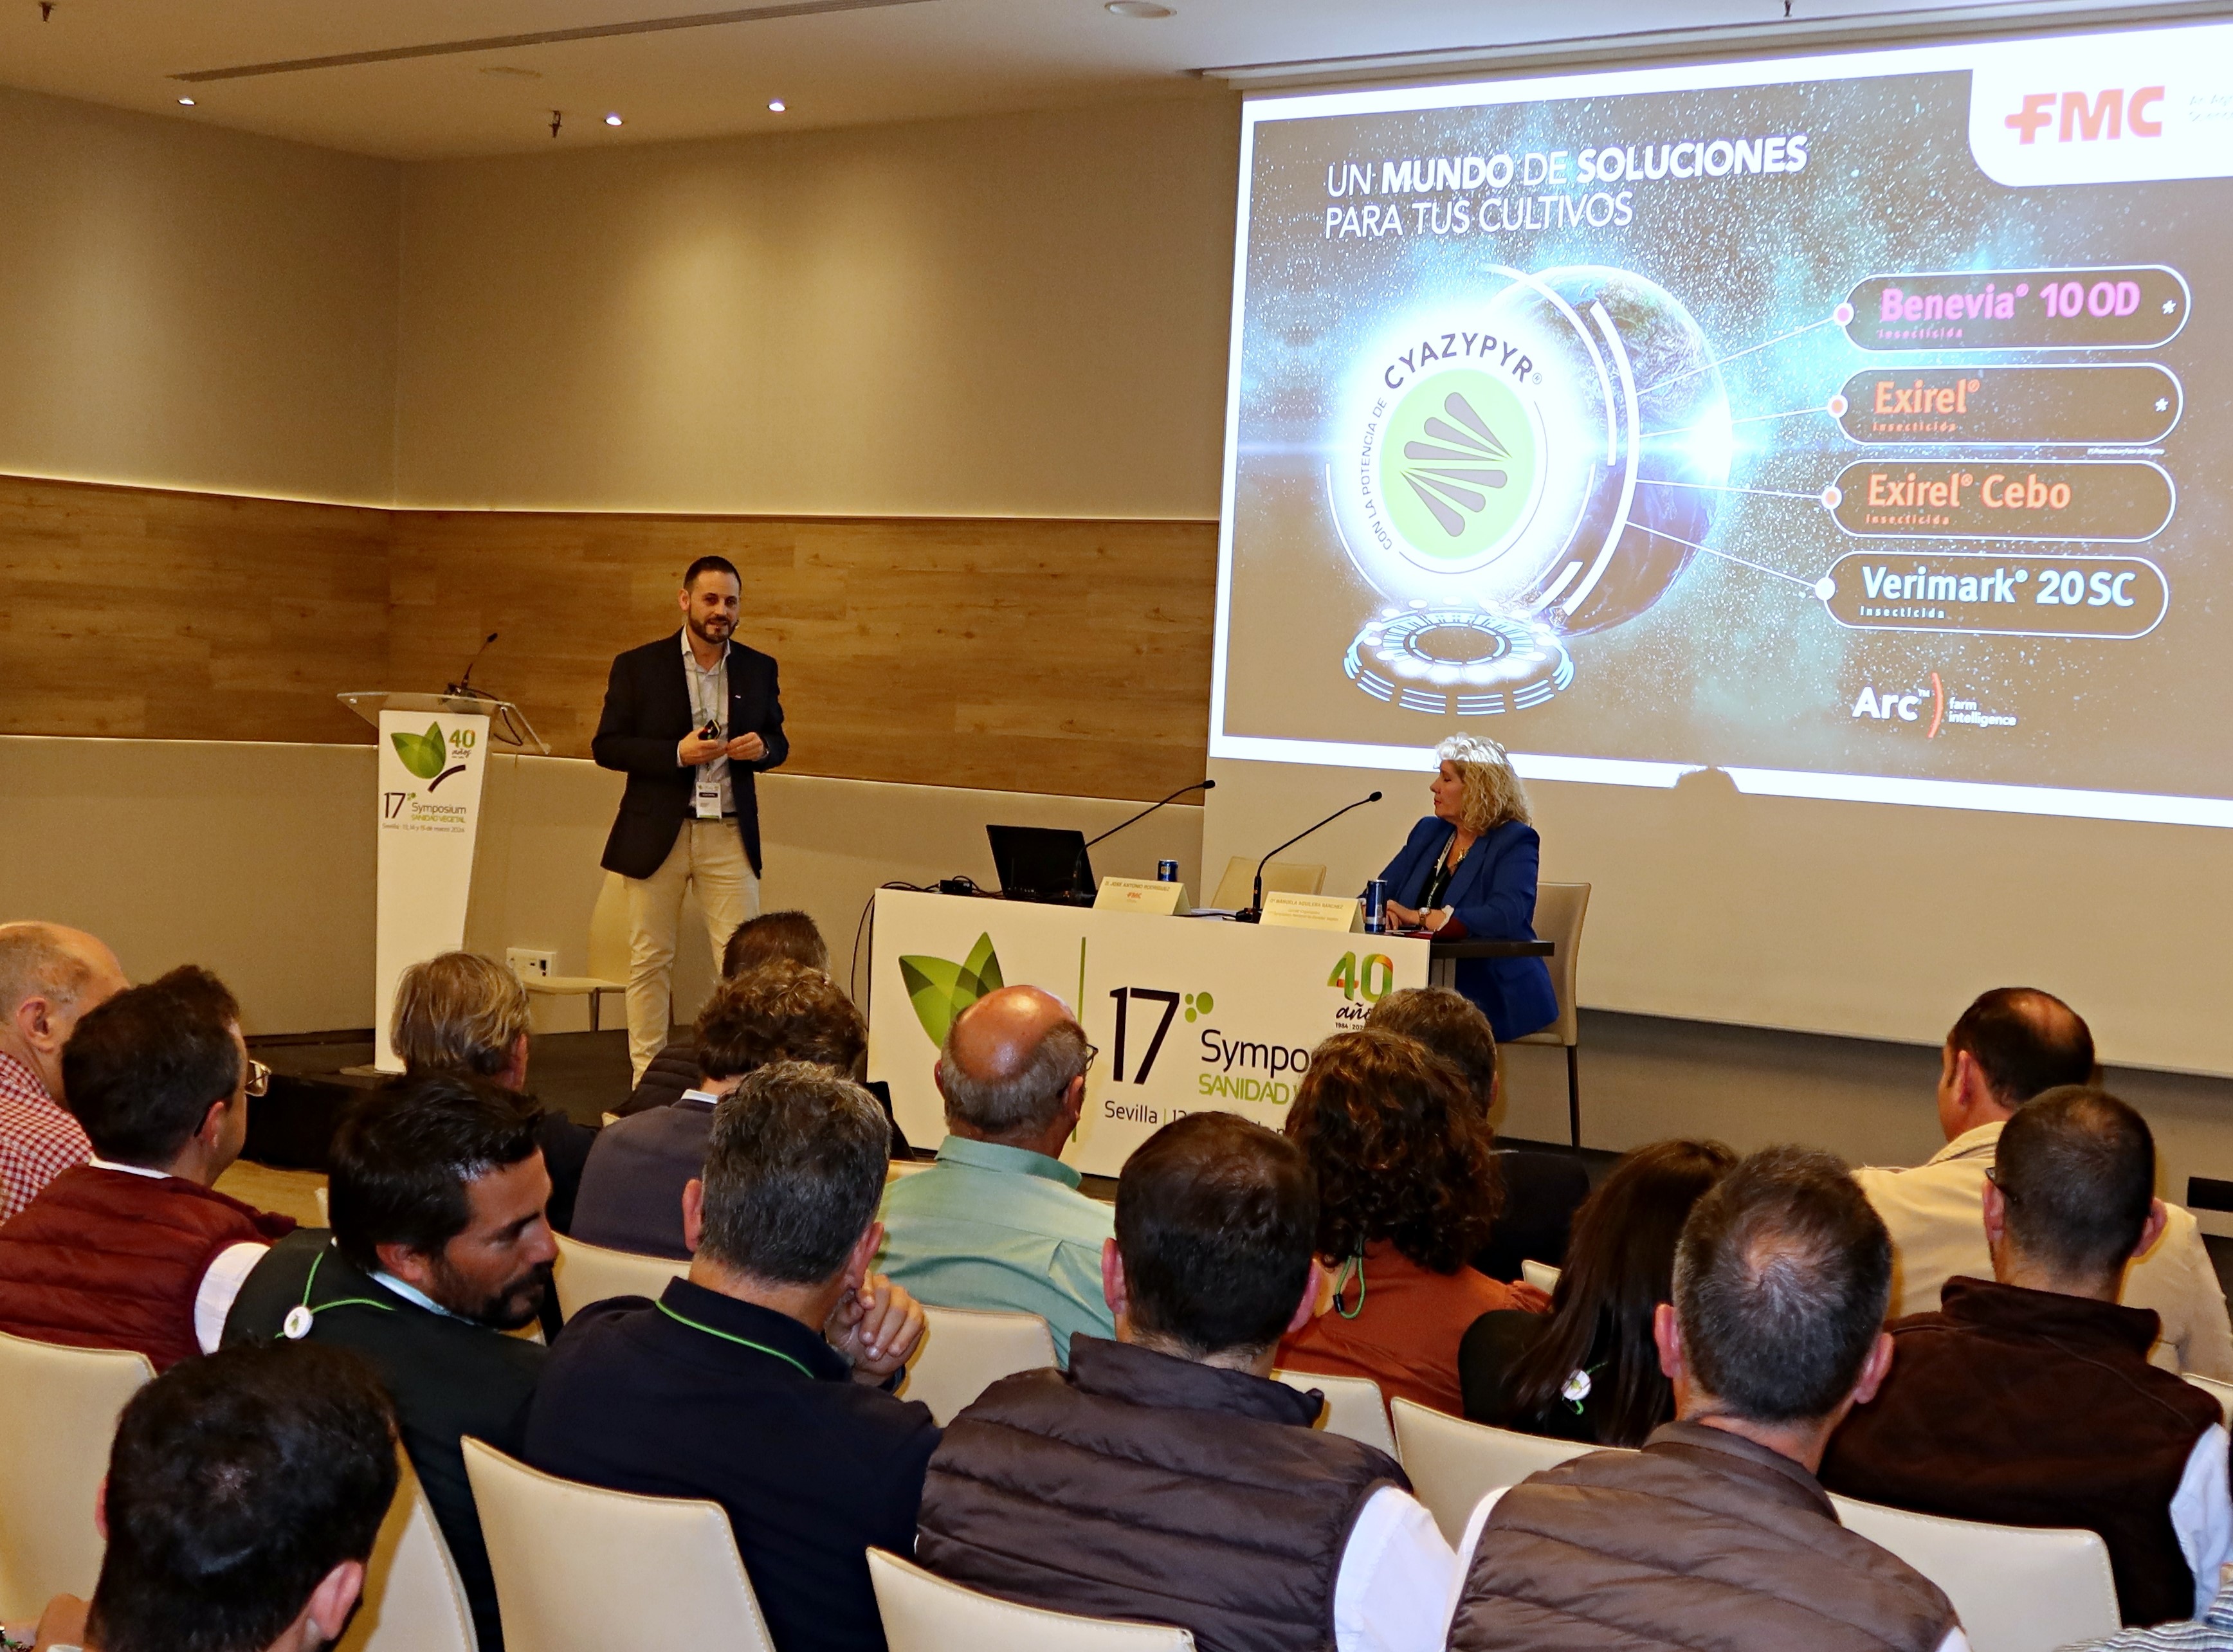 Presentadas as novas solucións de FMC Agricultural Solution en Sevilla